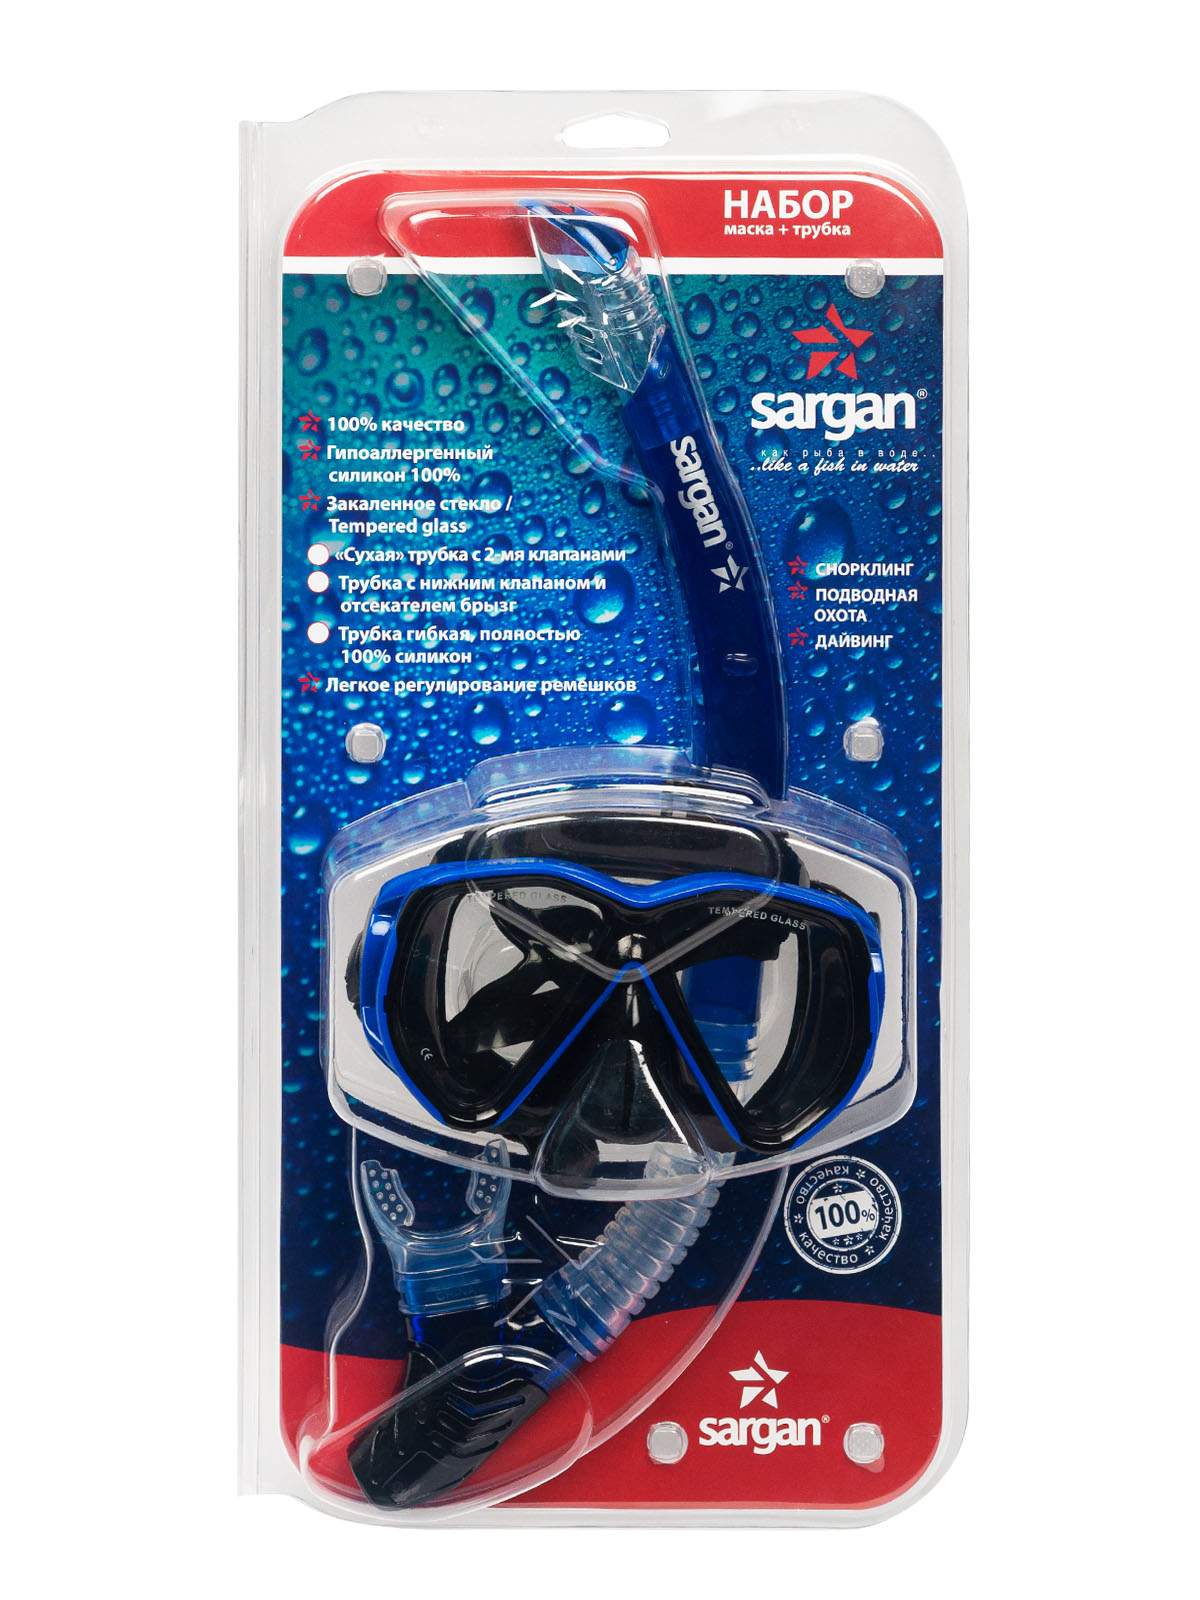 Набор САРГАН НЕРО (маска + трубка) черный силикон, синий SARGAN - купить в Diskus, цена на Мегамаркет